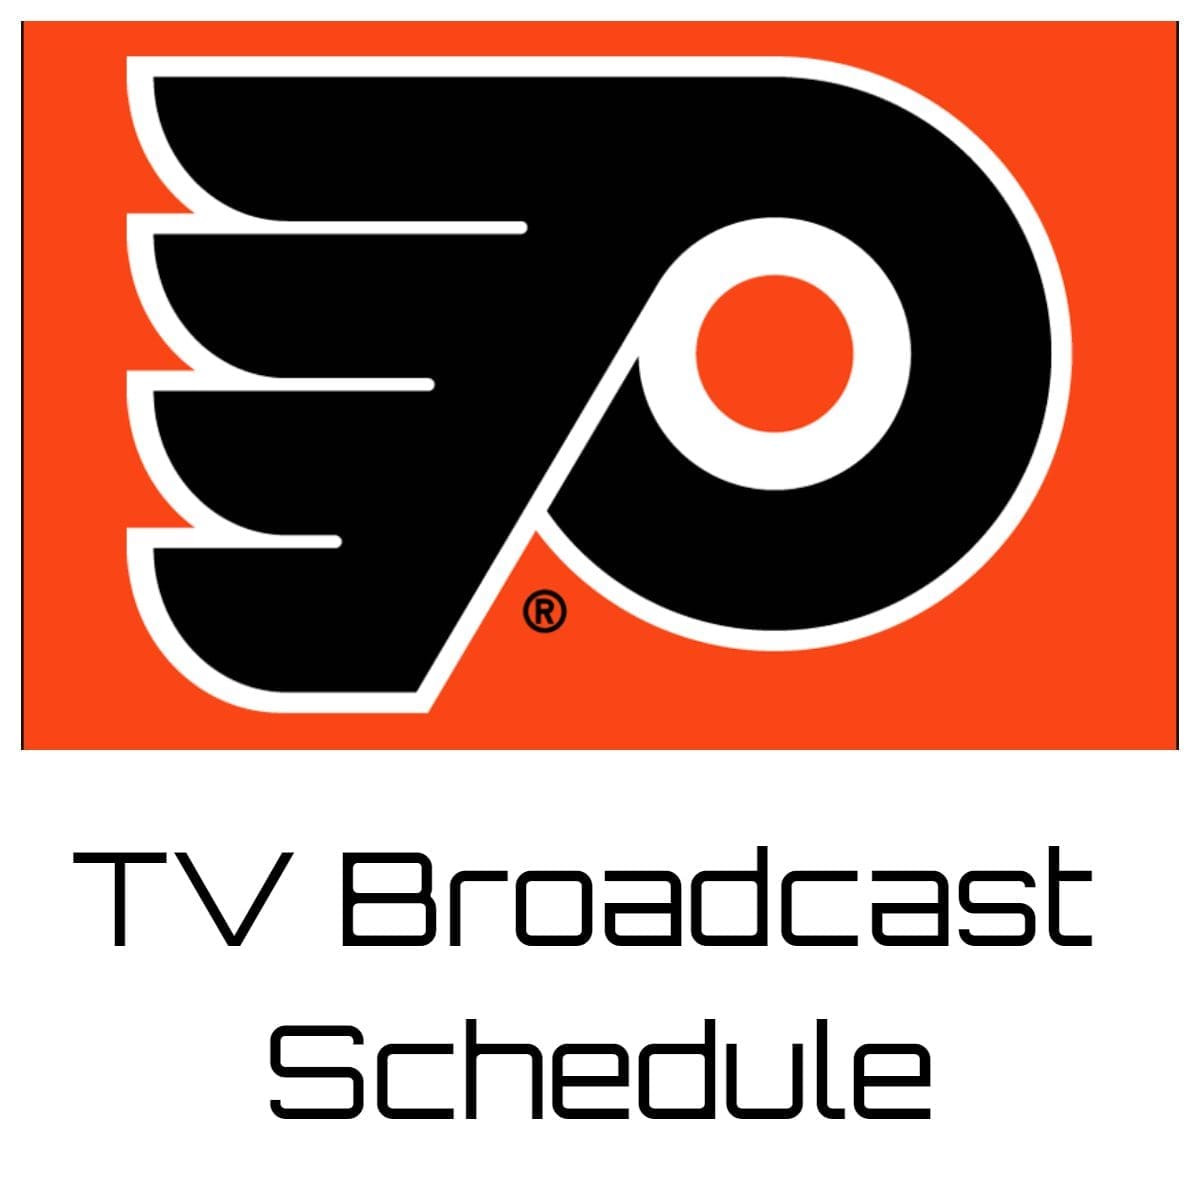 Philadelphia Flyers TV Broadcast Schedule